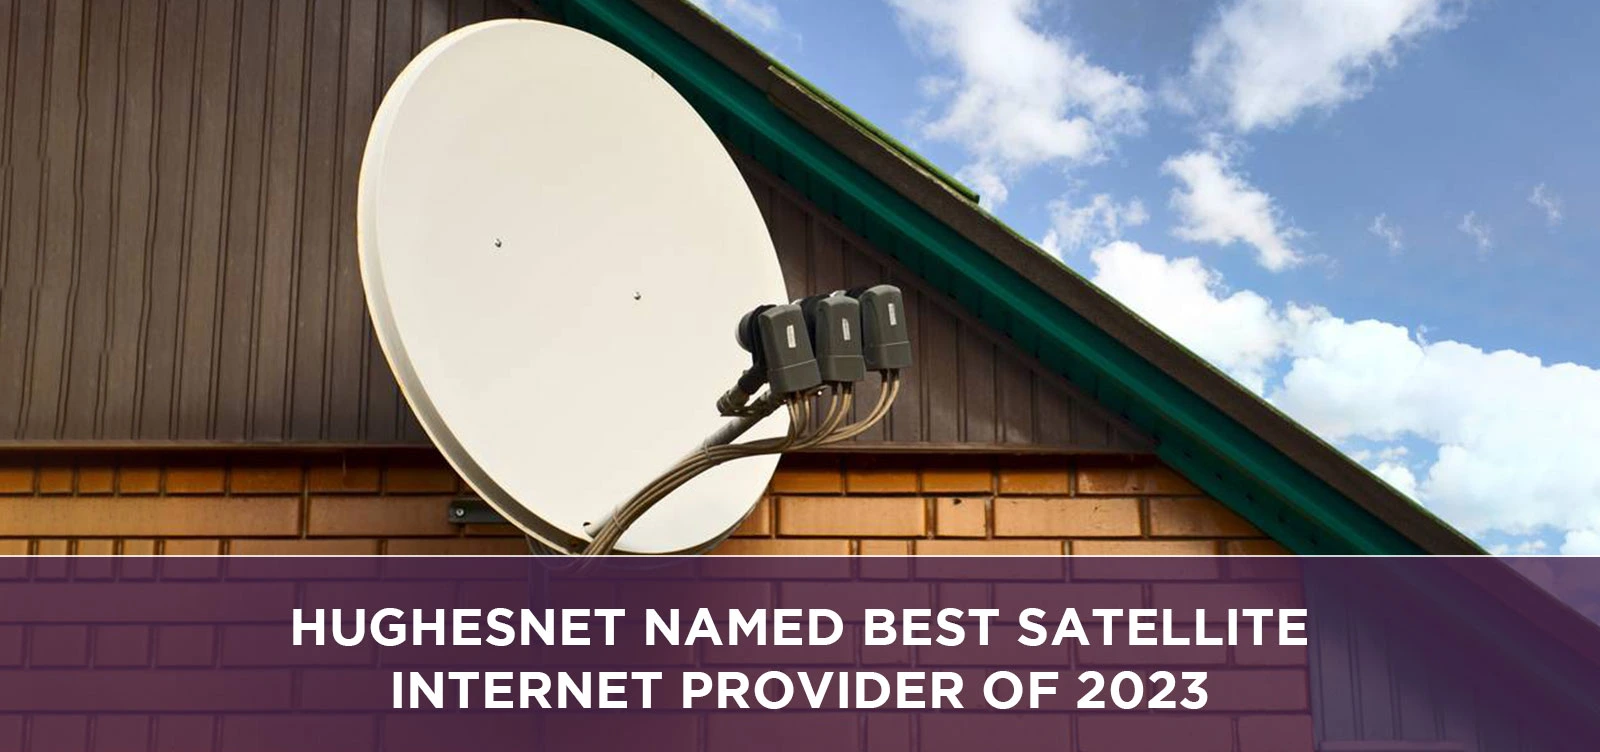 HughesNet Named Best Satellite Internet Provider of 2023